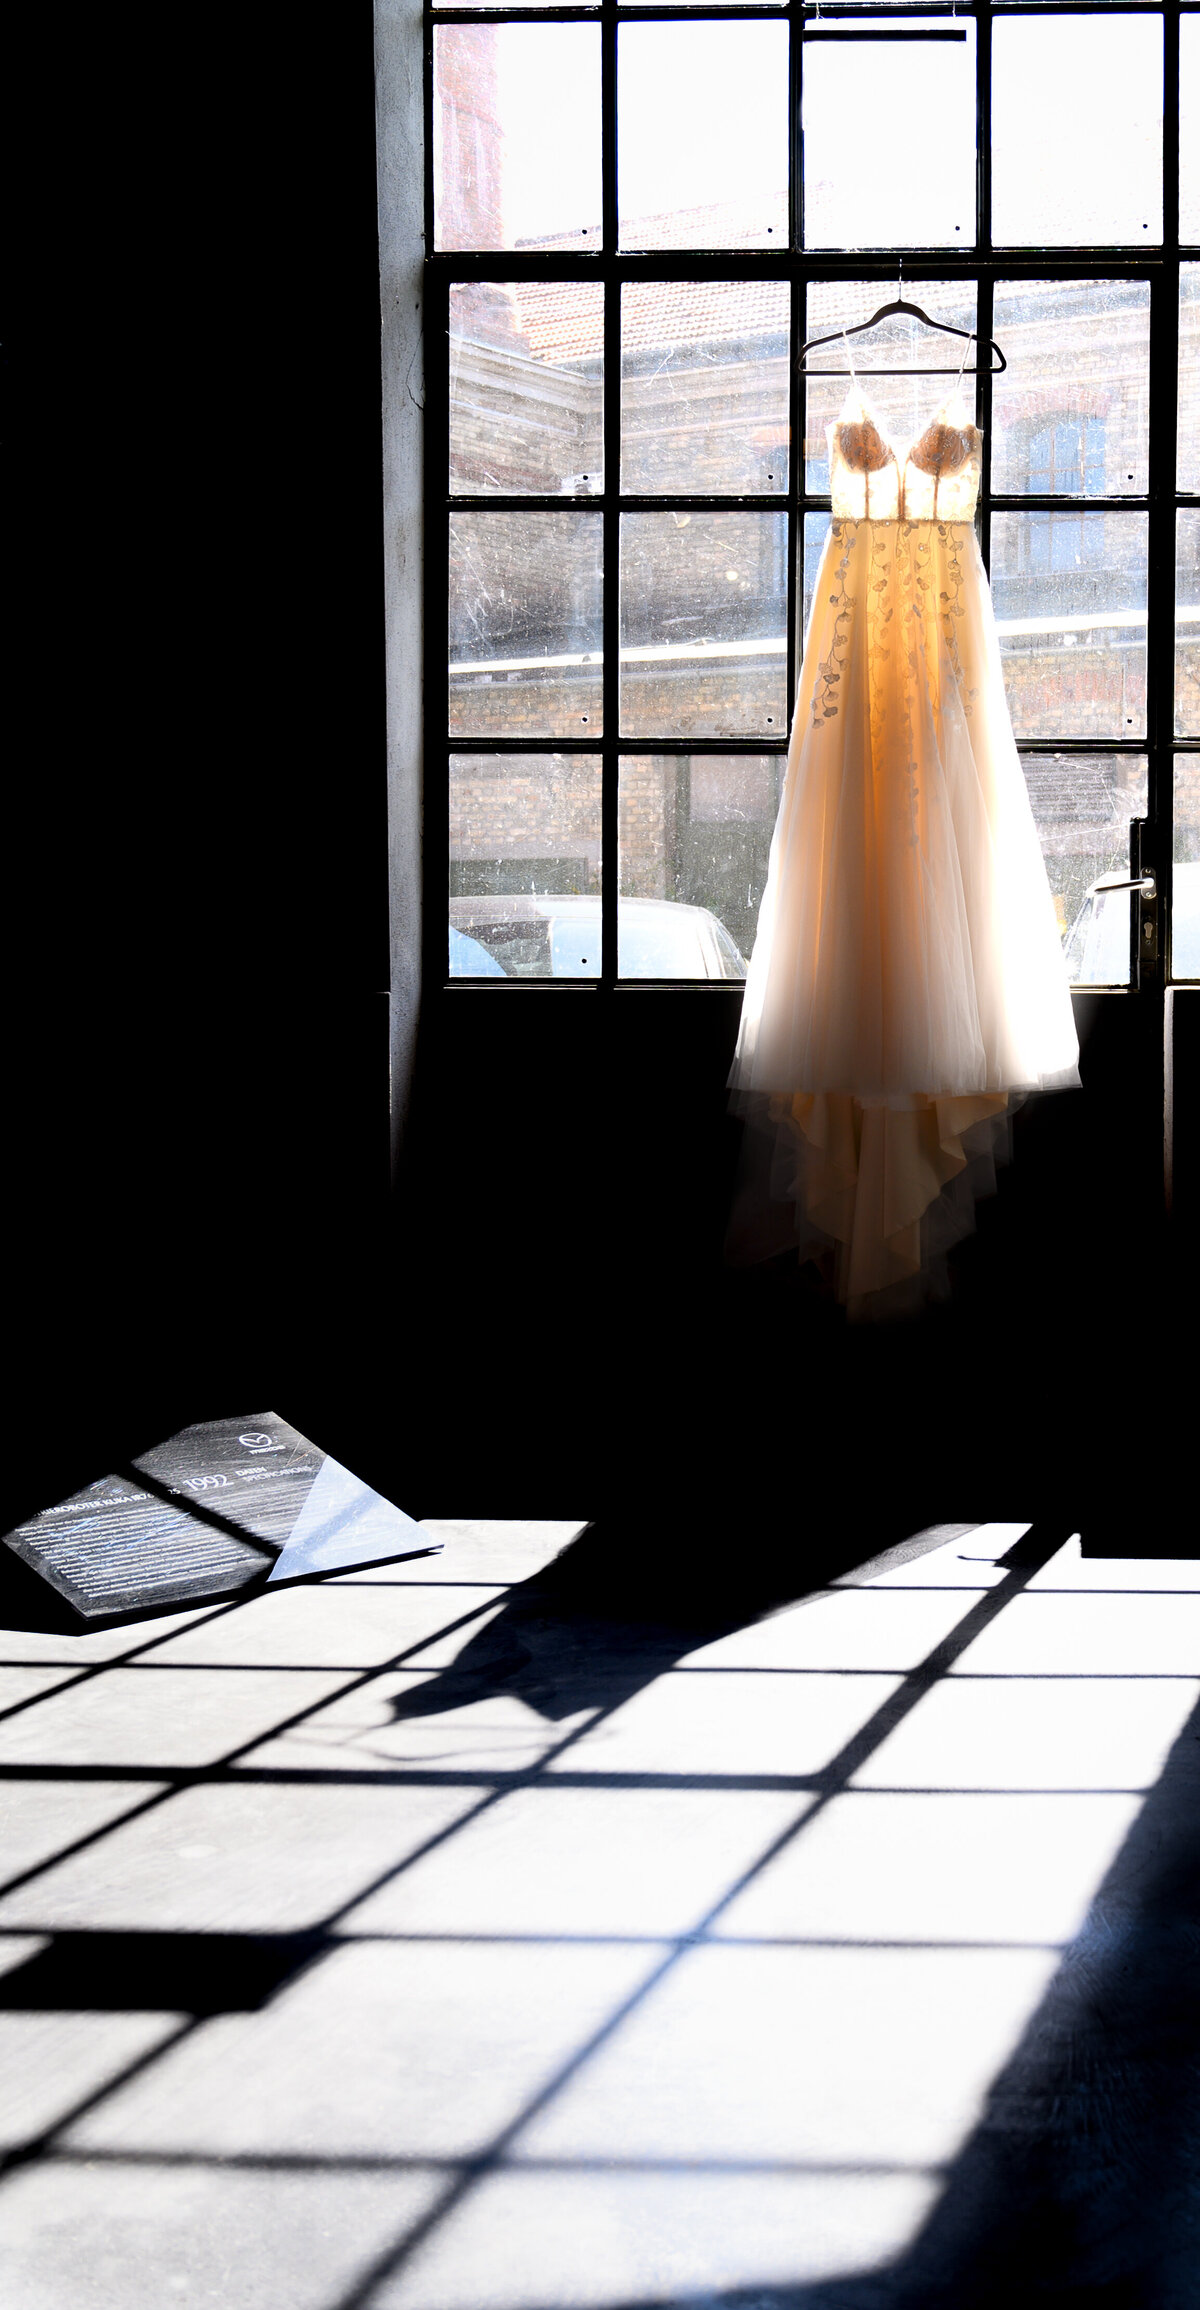 Brautkleid hängt an Glastür